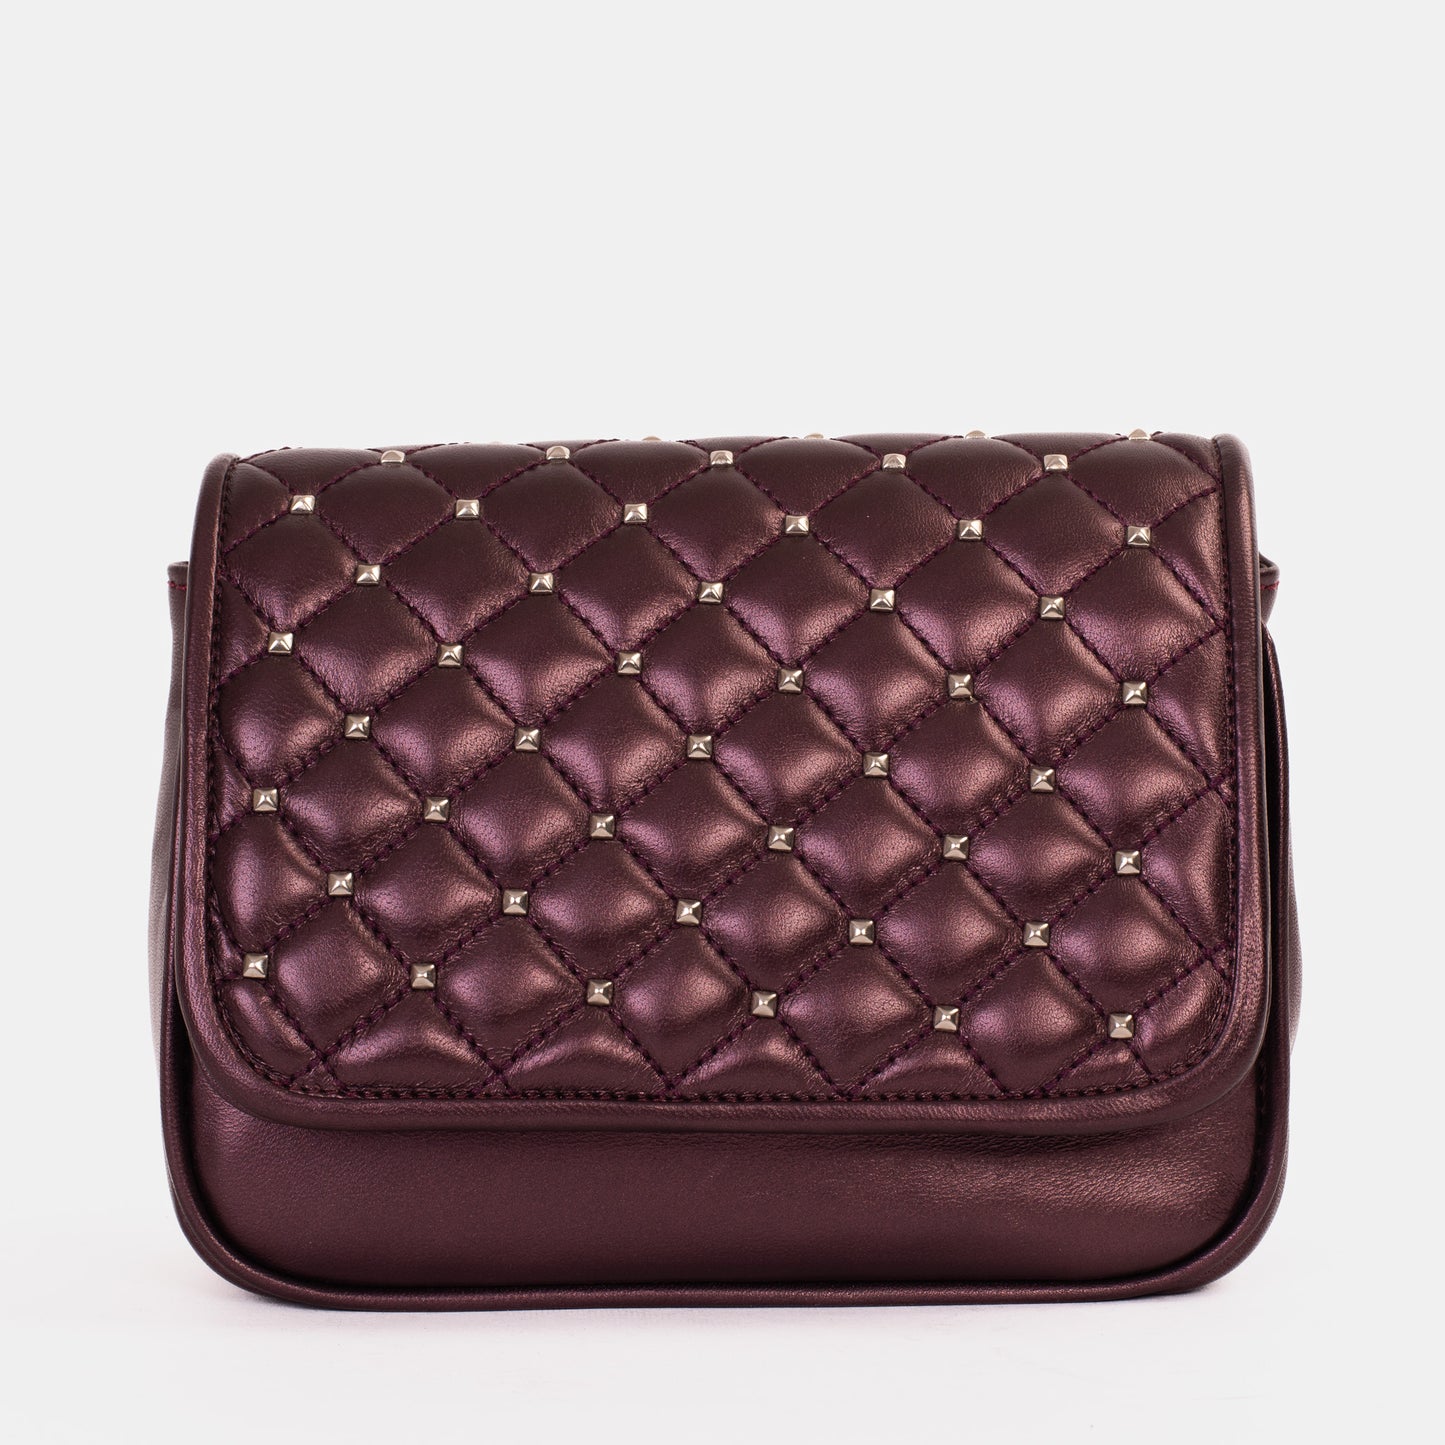 The Leno Burgundy Leather Handbag